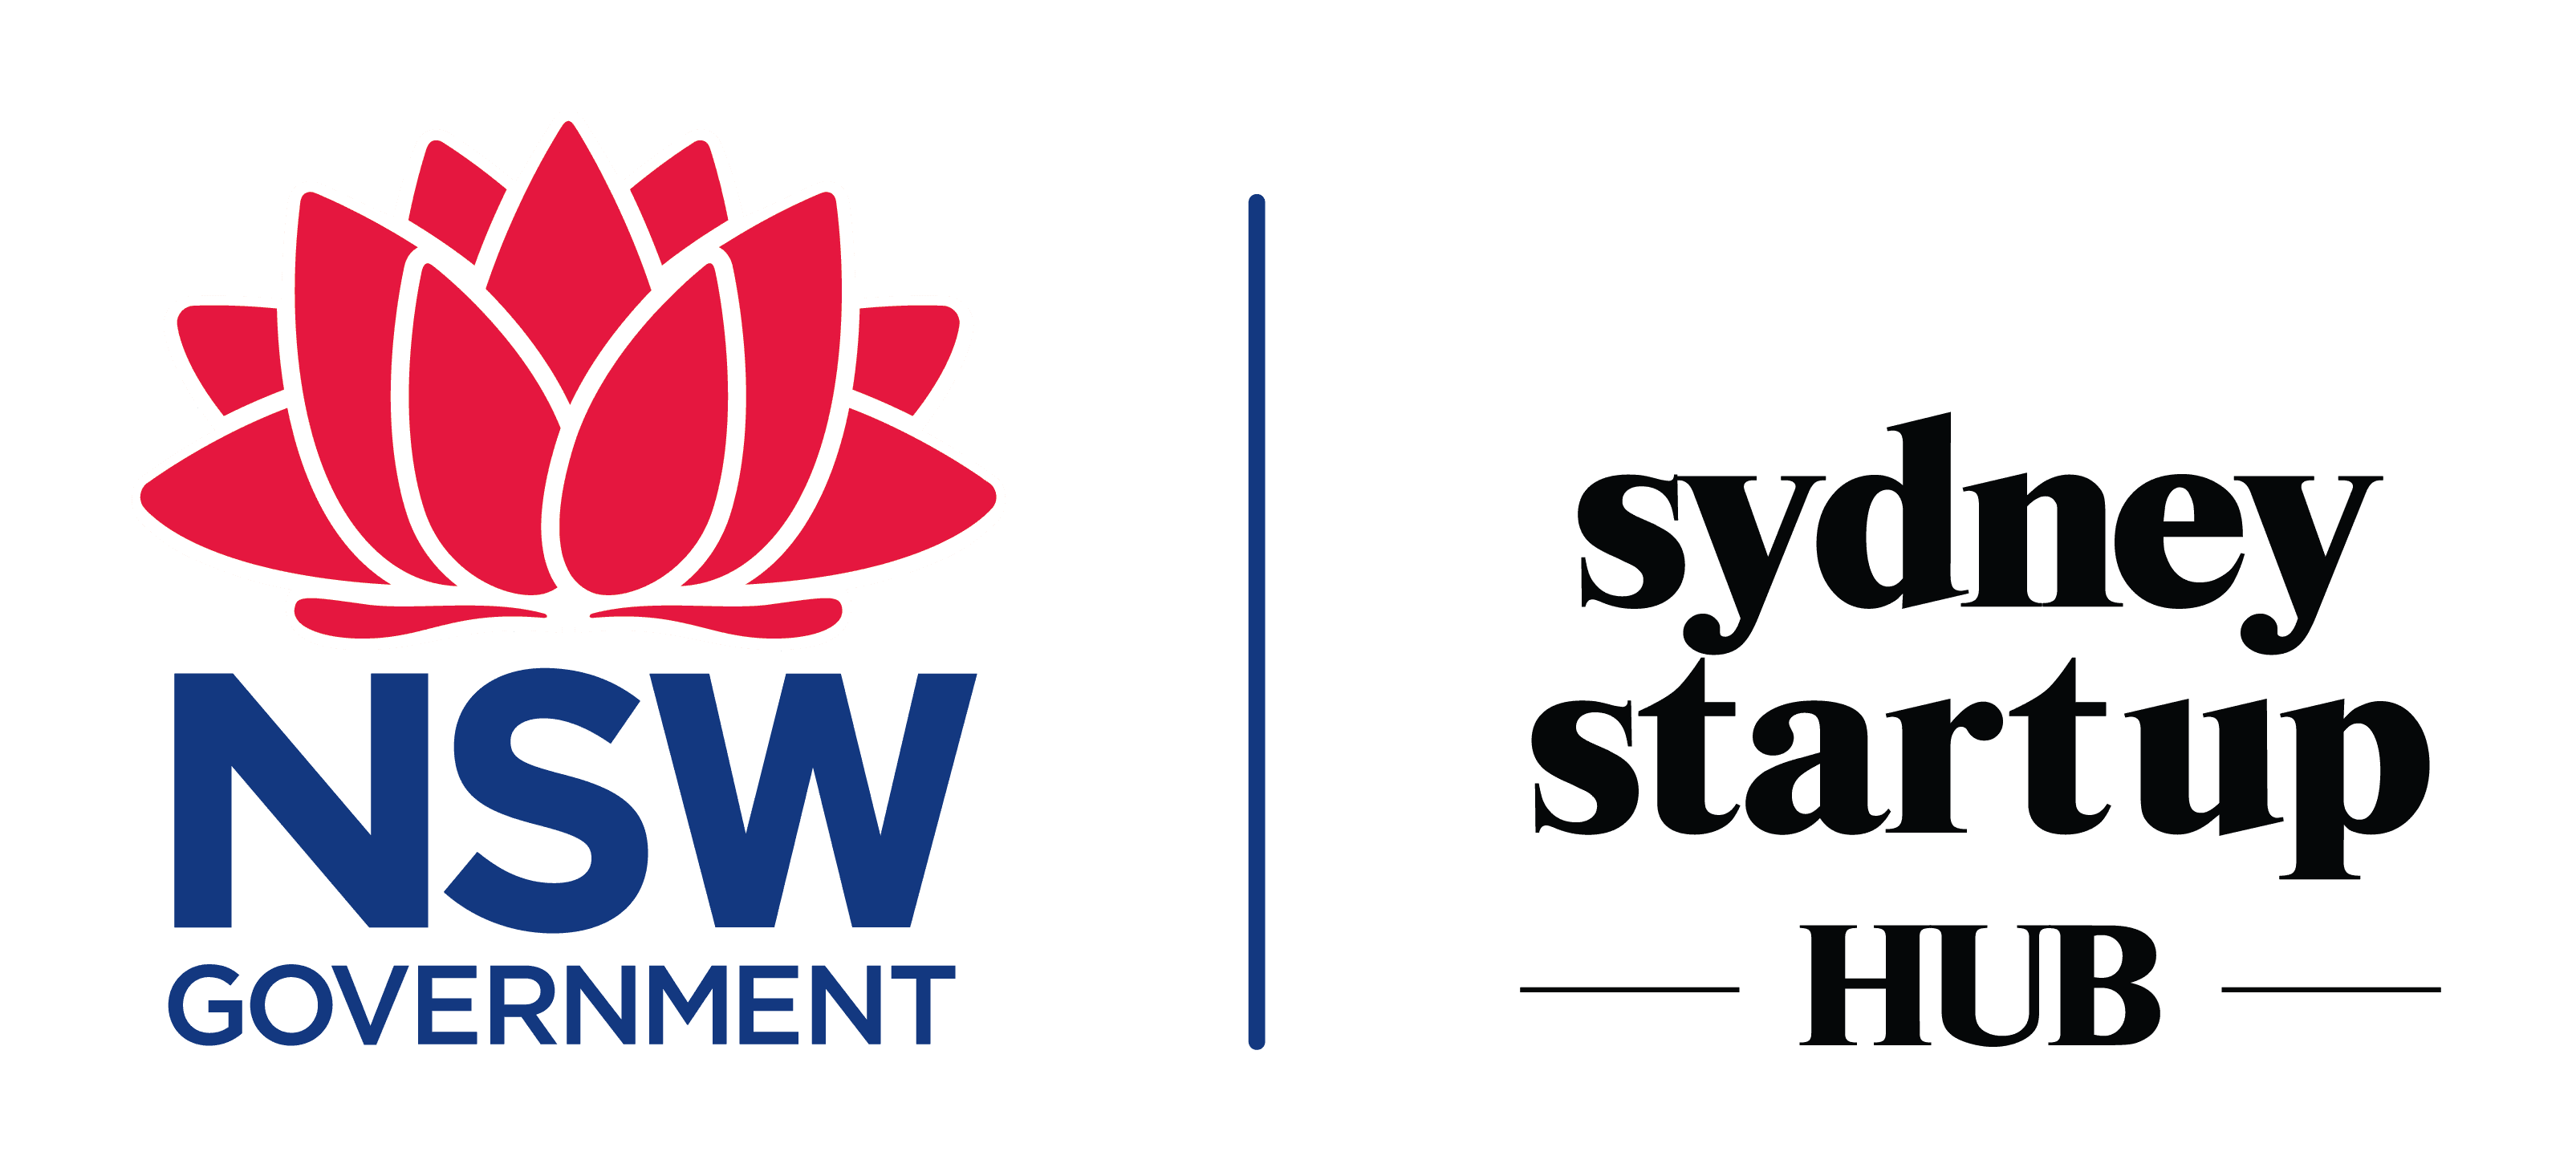 Sydney Startup Hub